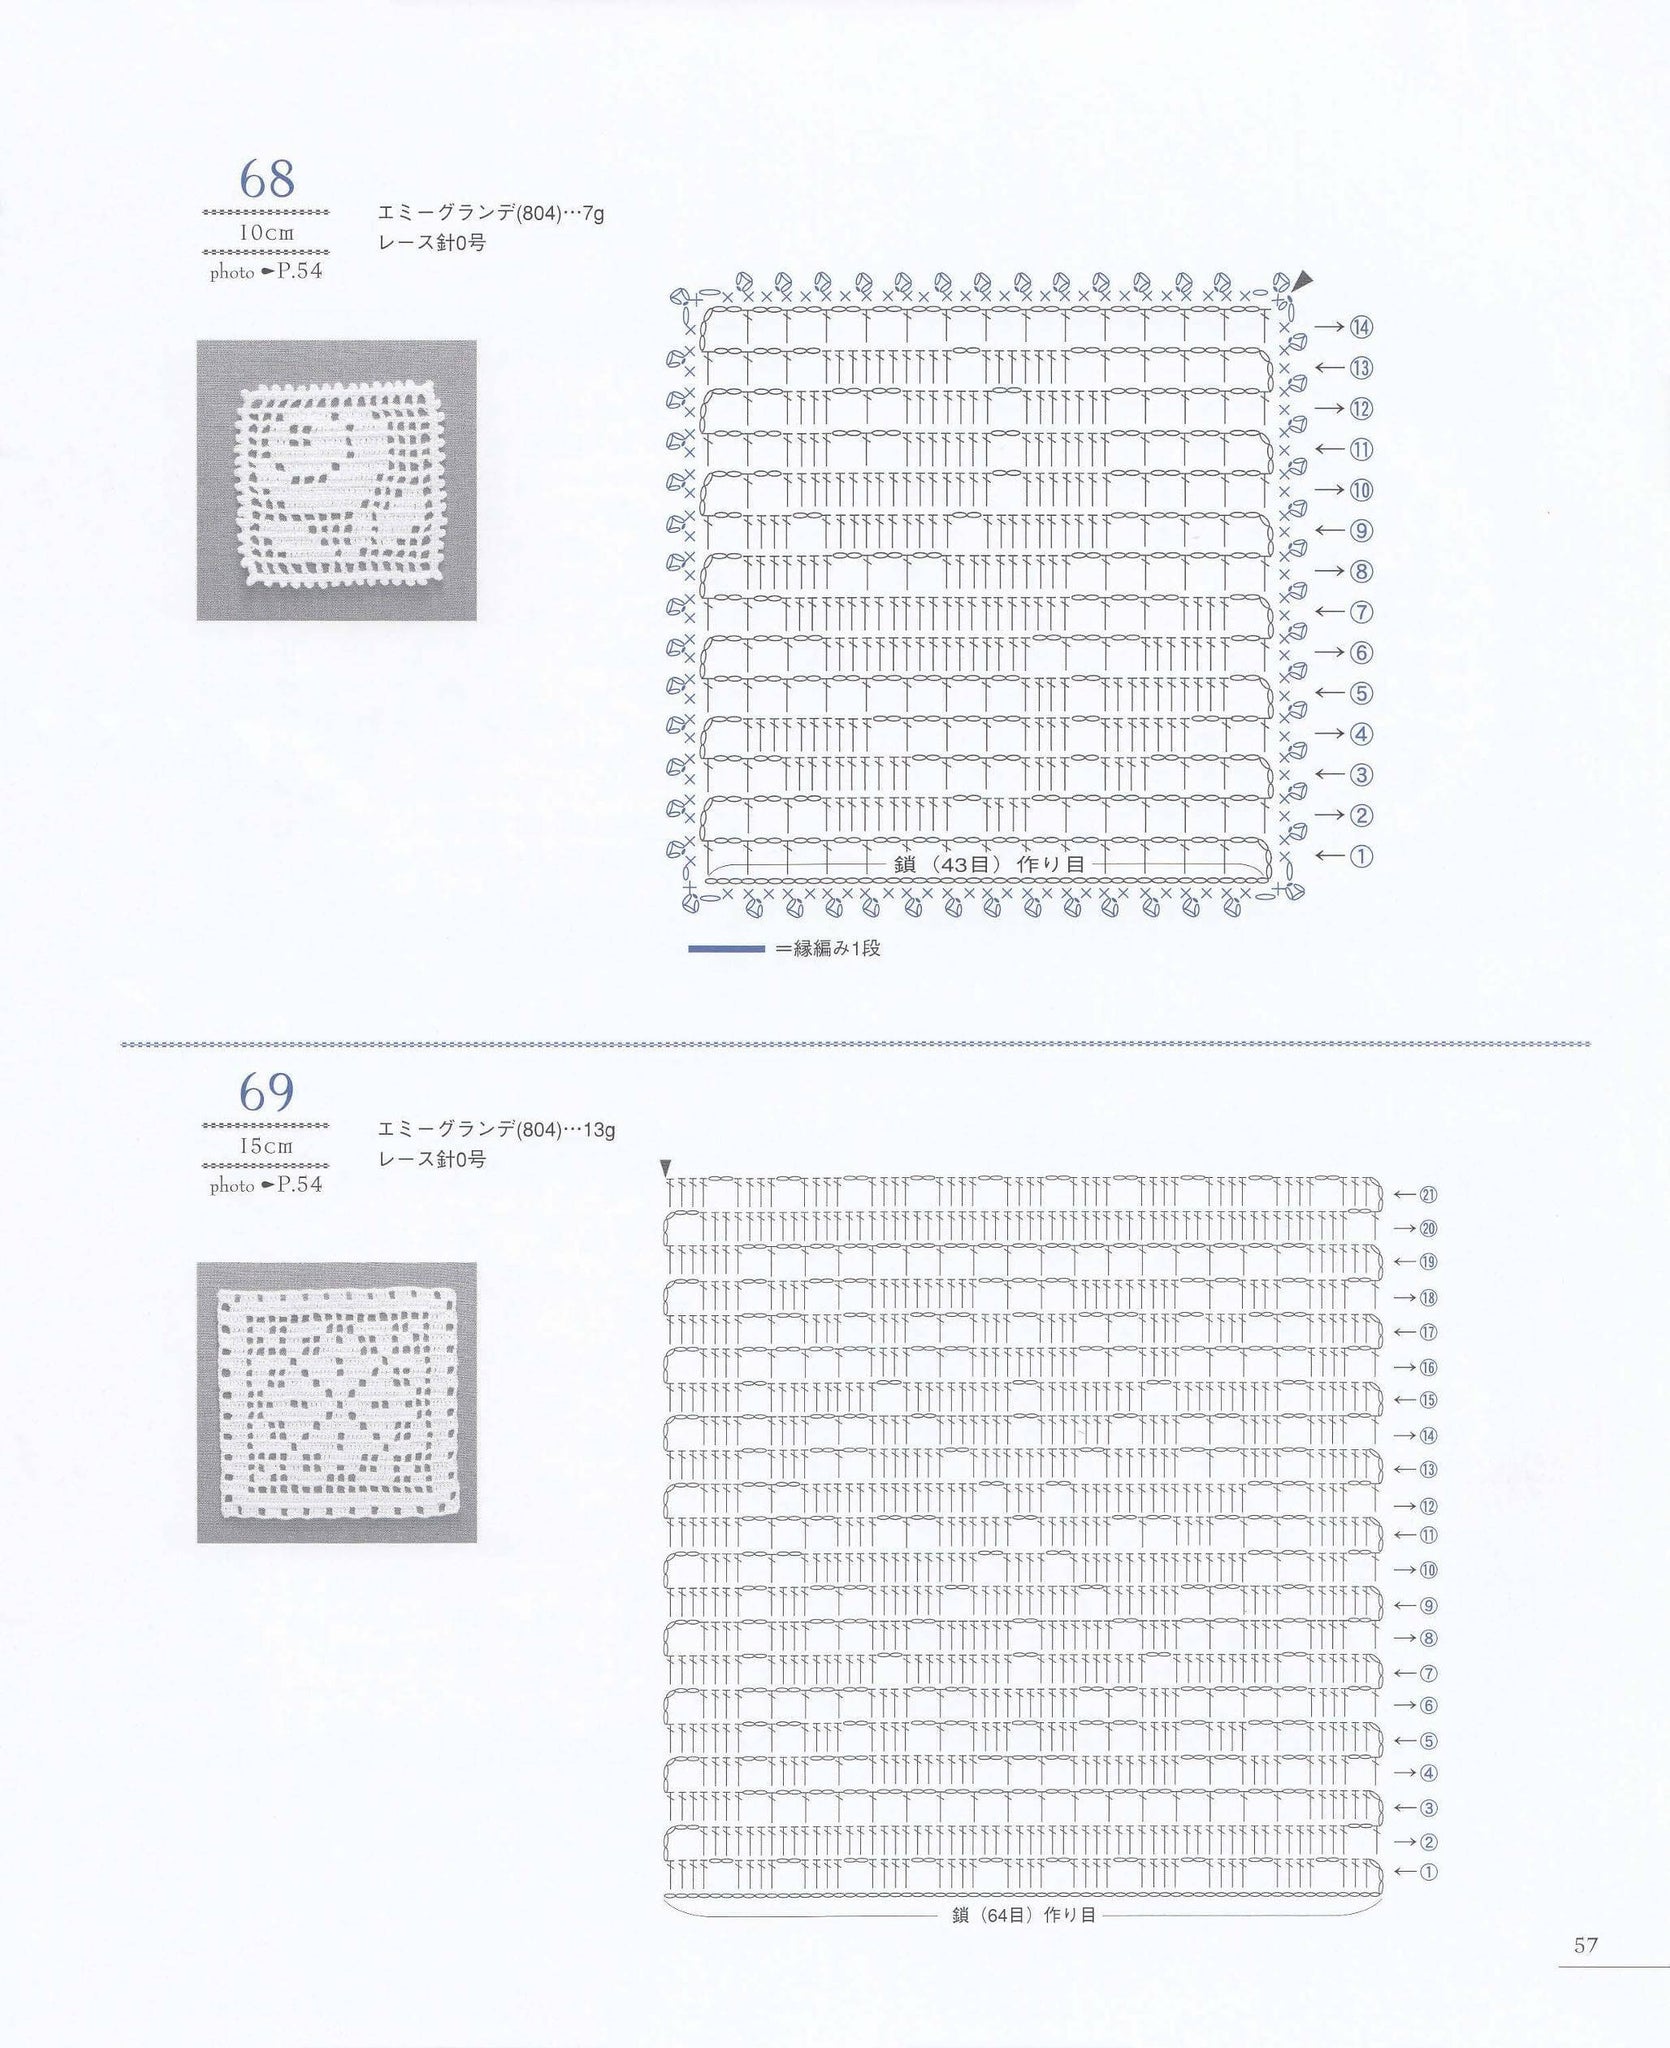 Filet crochet motifs pattern